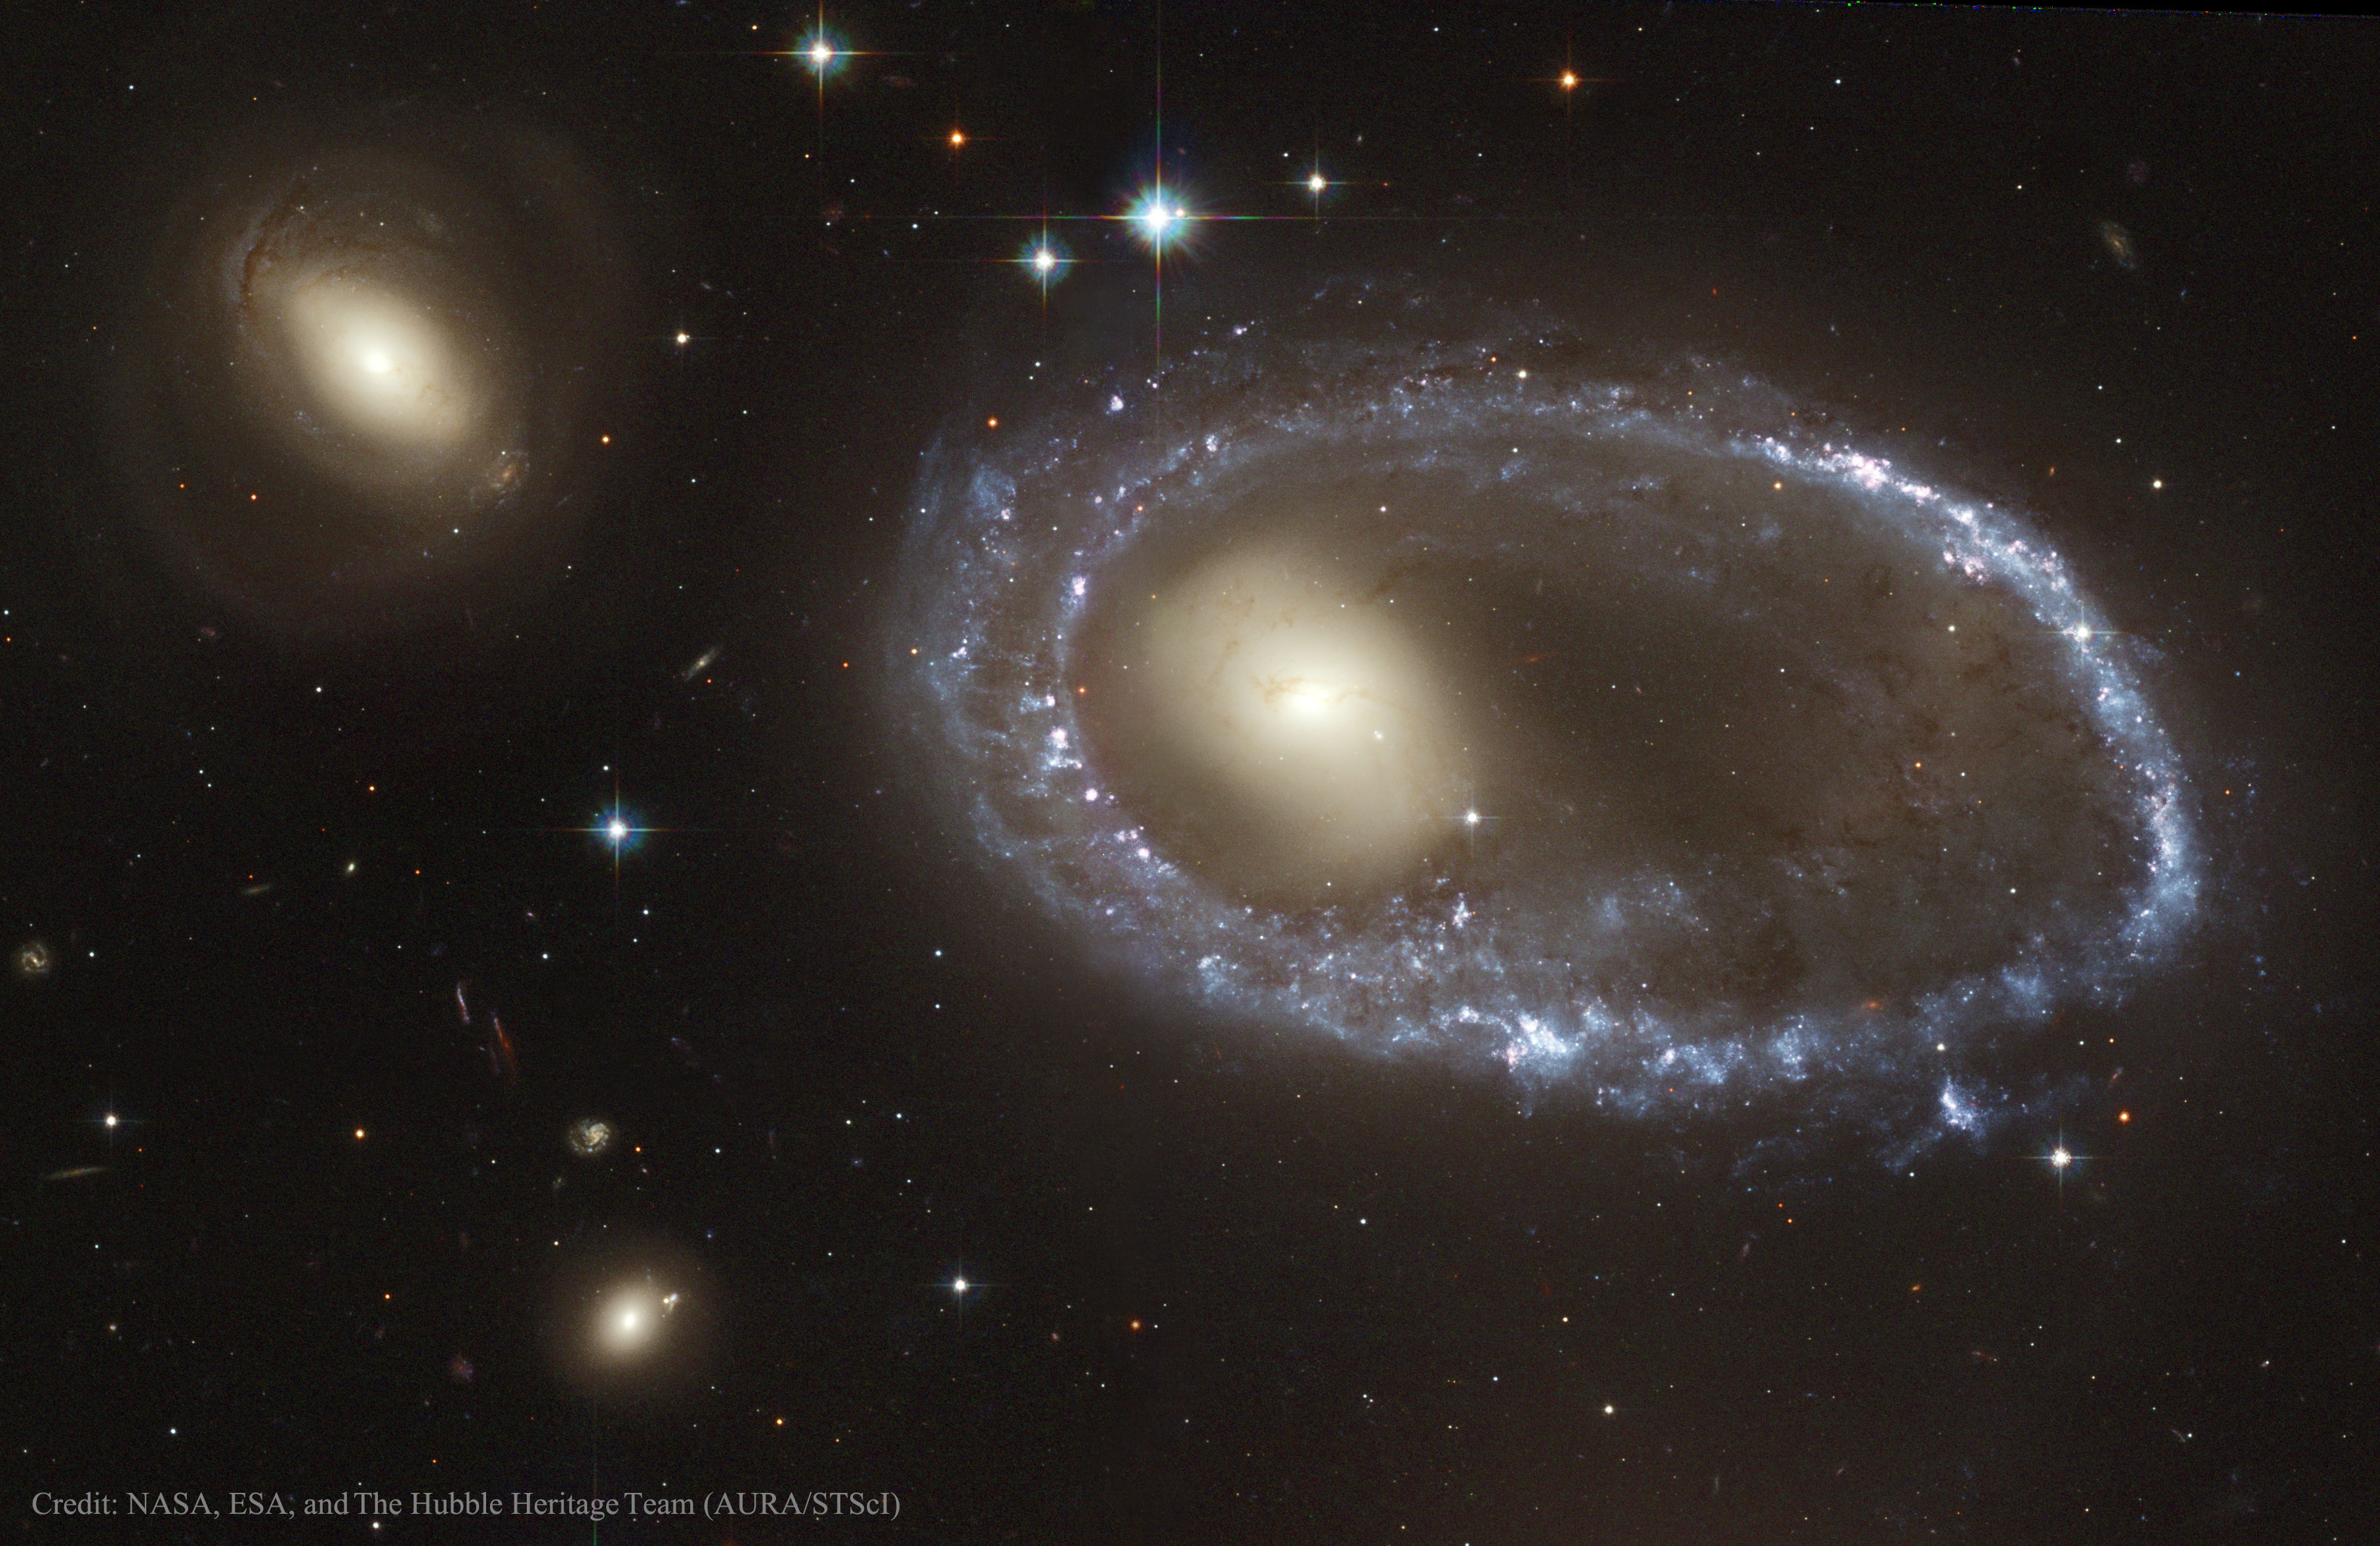 Какие космические объекты названы. Holmberg 15a Галактика. Объект ХОГА кольцеобразная Галактика. Am 0644-741. Космос Галактика Млечный путь планеты.